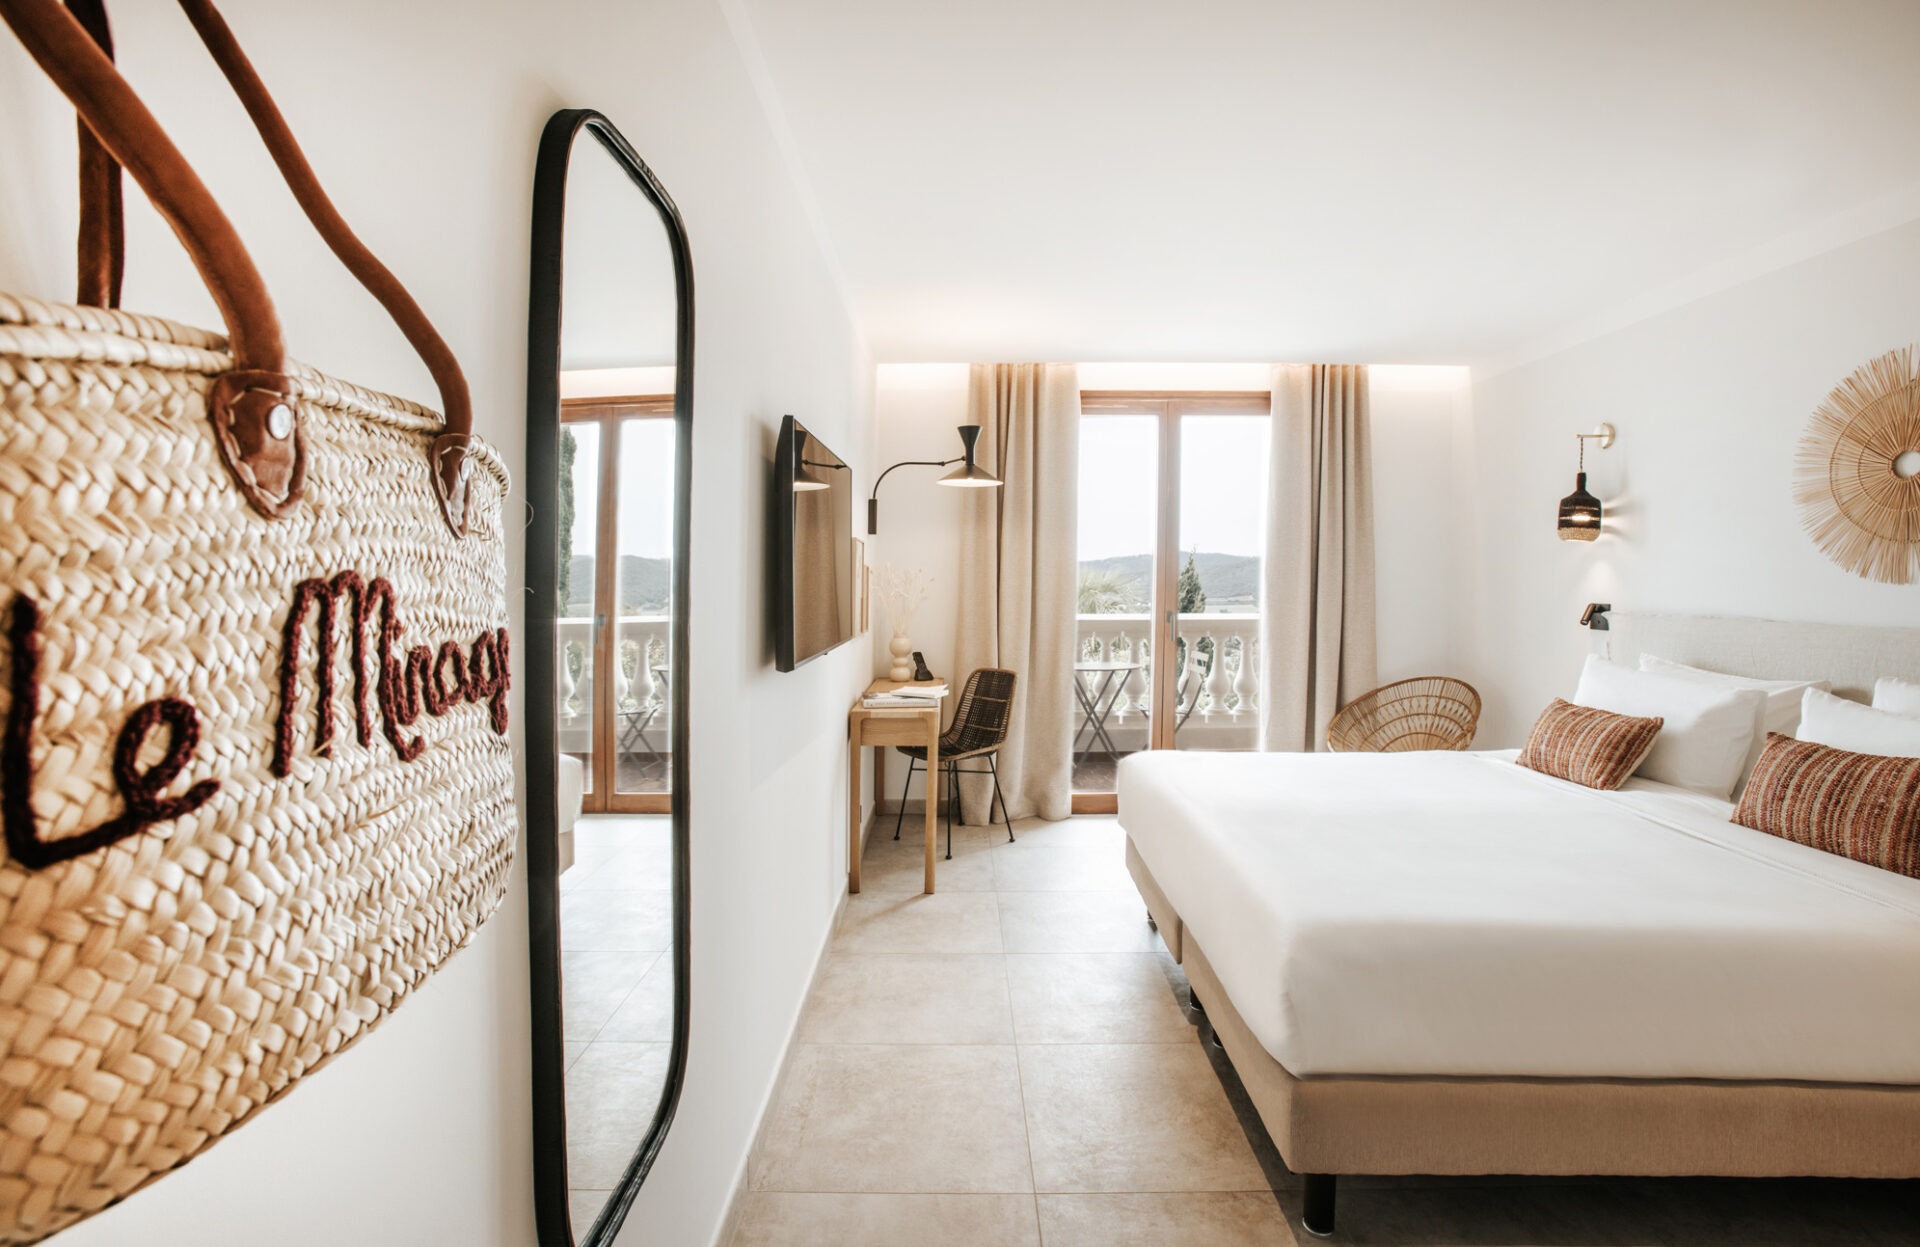 Chambre classique lit double hotel bormes les mimosas